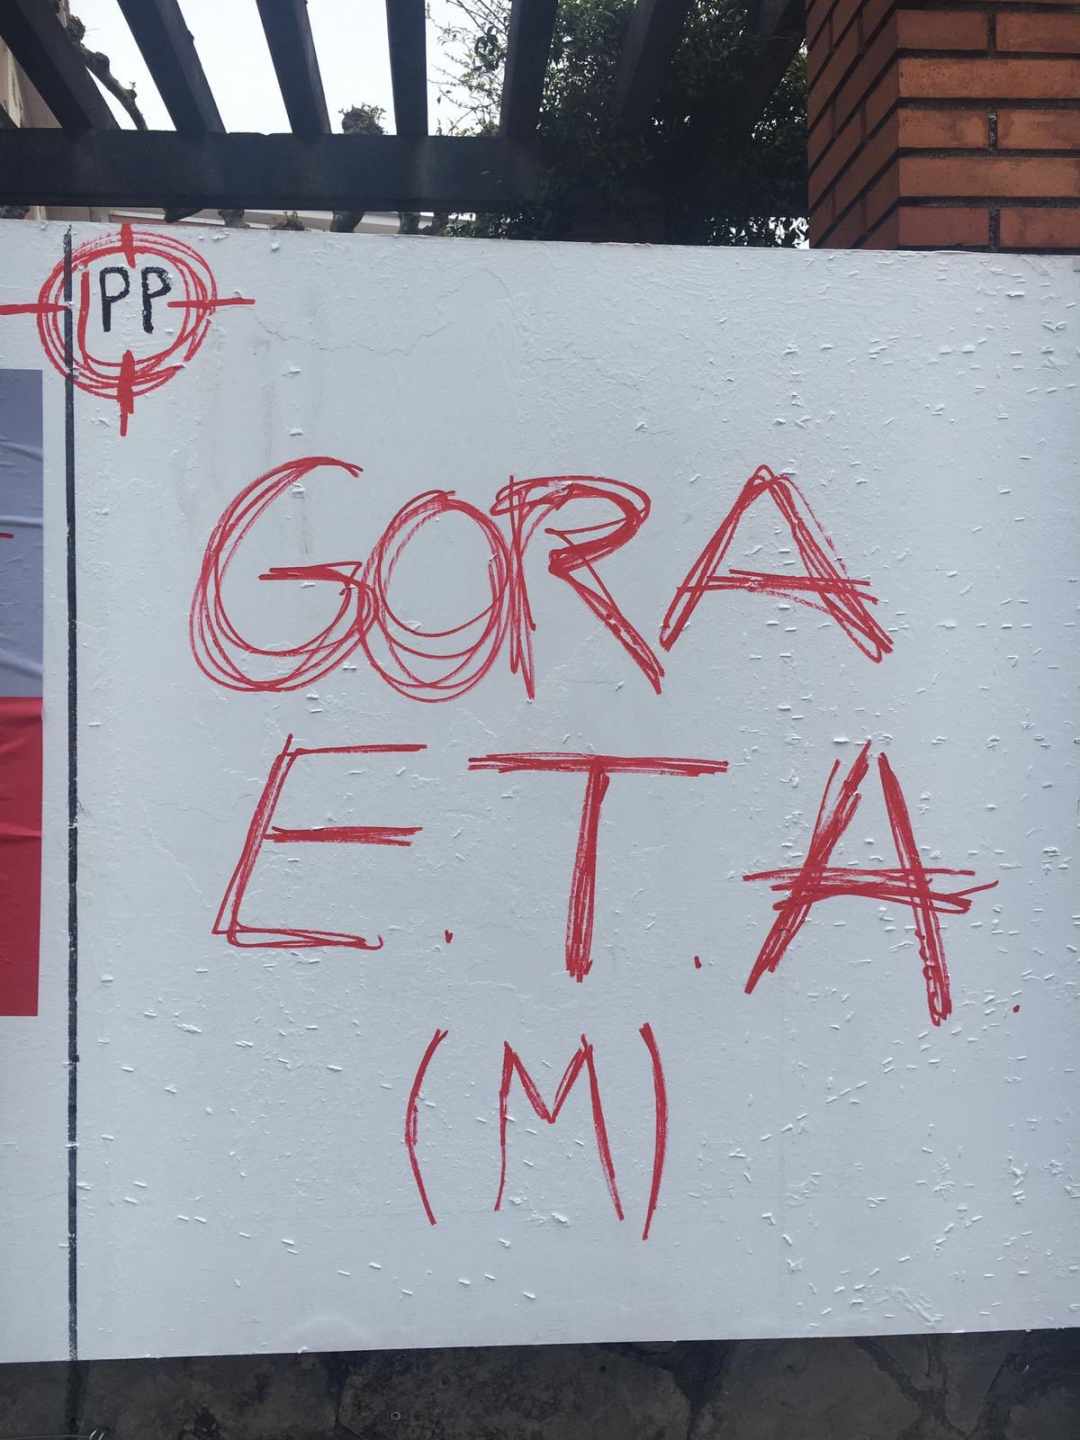 Aparece una diana contra el PP junto a un 'Gora ETA' en Erandio